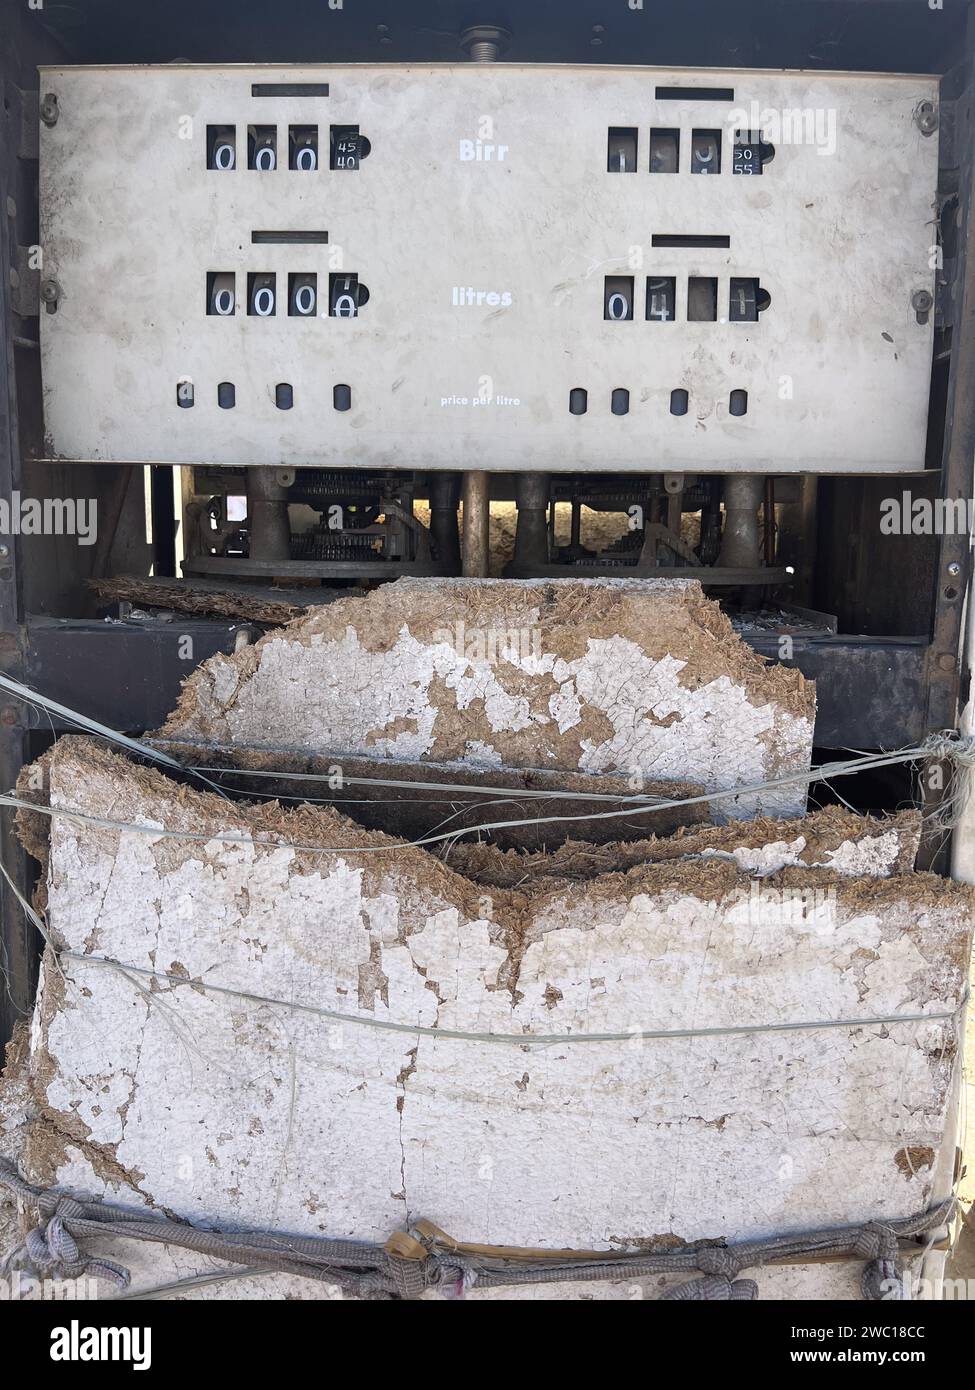 Gondar, Ethiopie, 19 janvier 2023 ; vieille pompe à essence, rouillée, réparé avec des planches et des bouts de ficelle, Gondar, Ethiopie, Afrique Banque D'Images